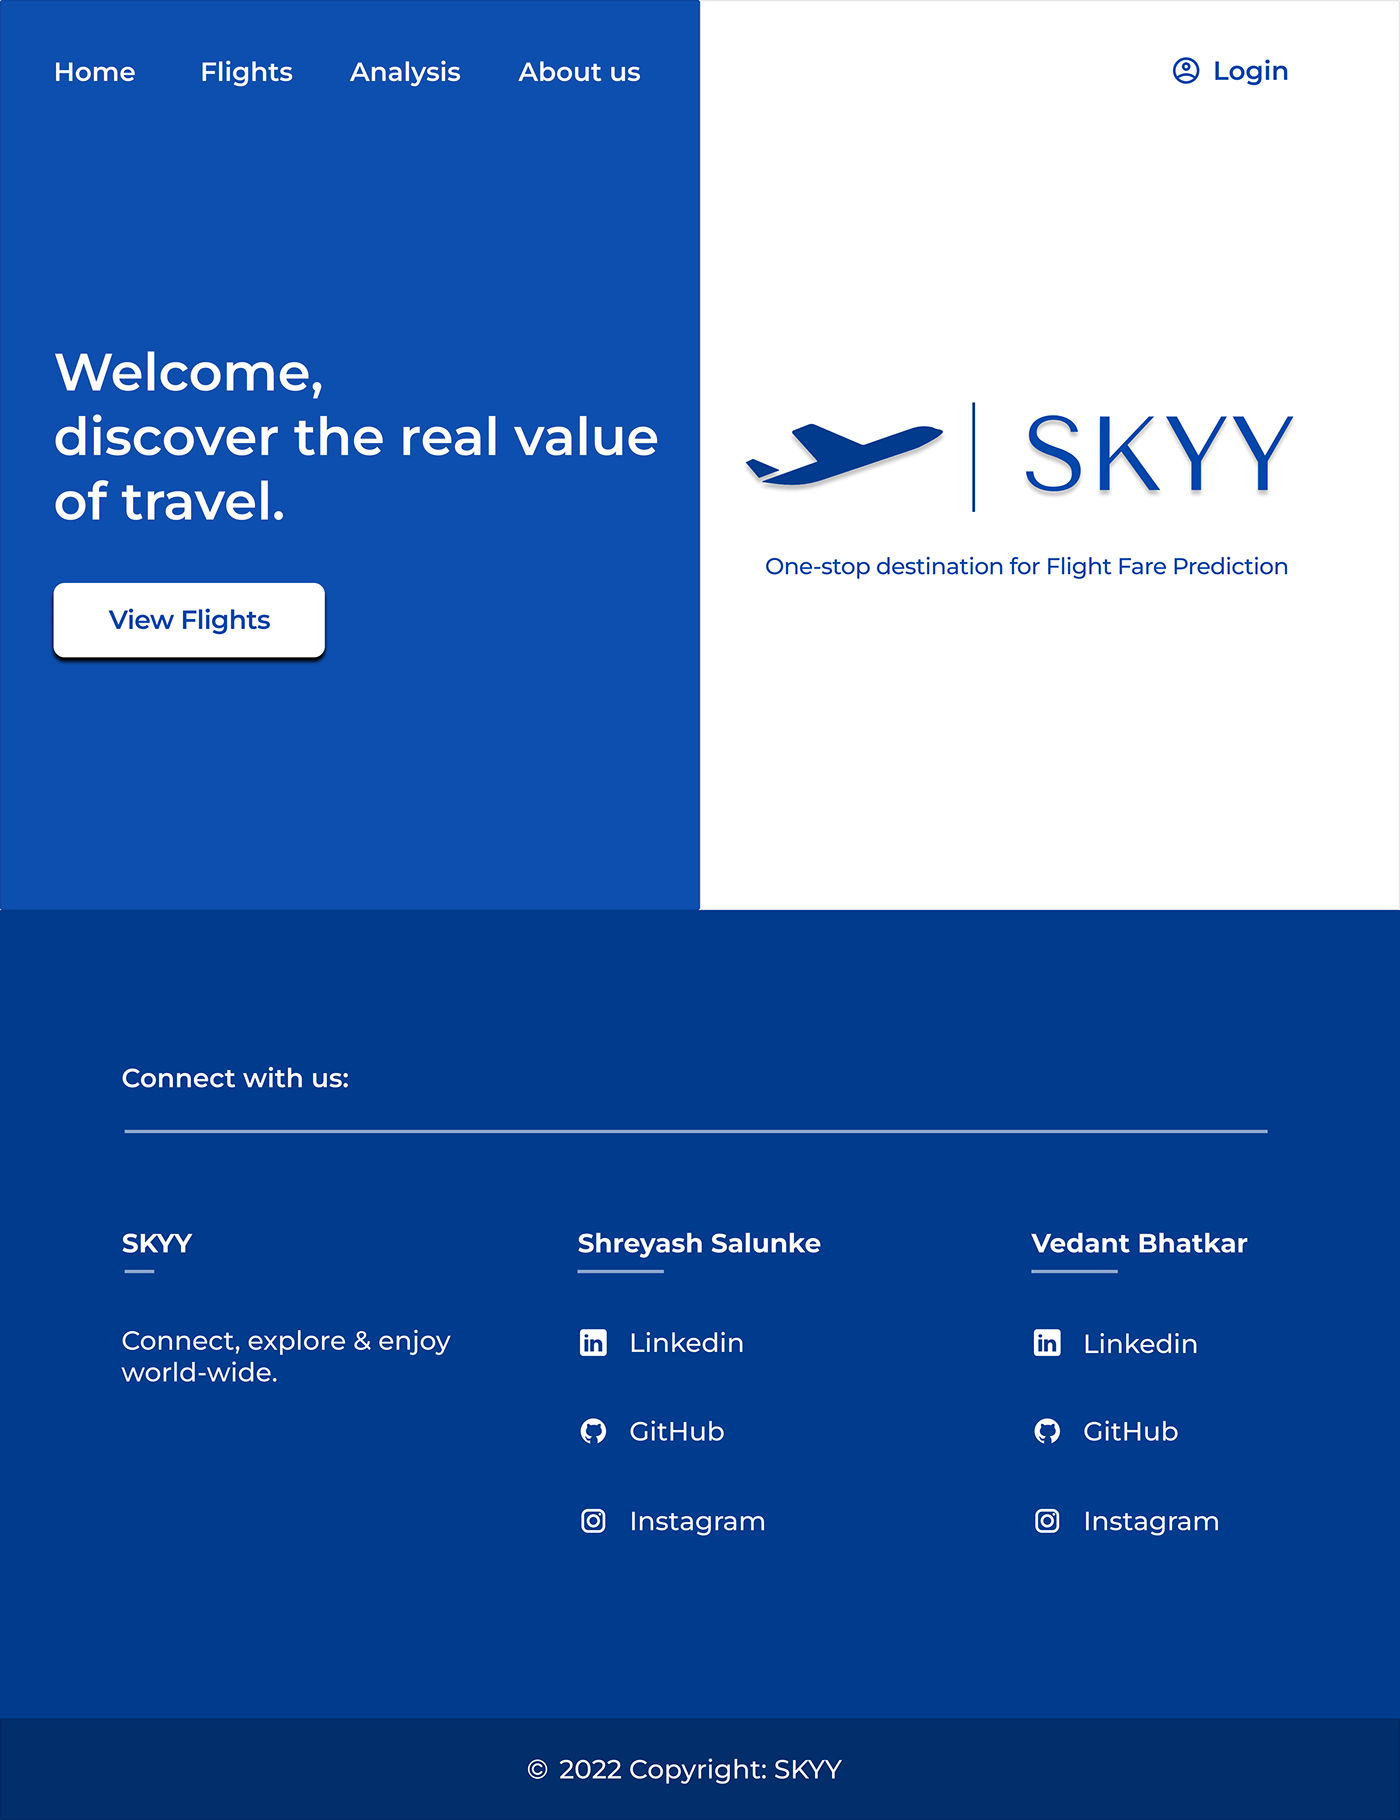 Landing Page of SKYY Website